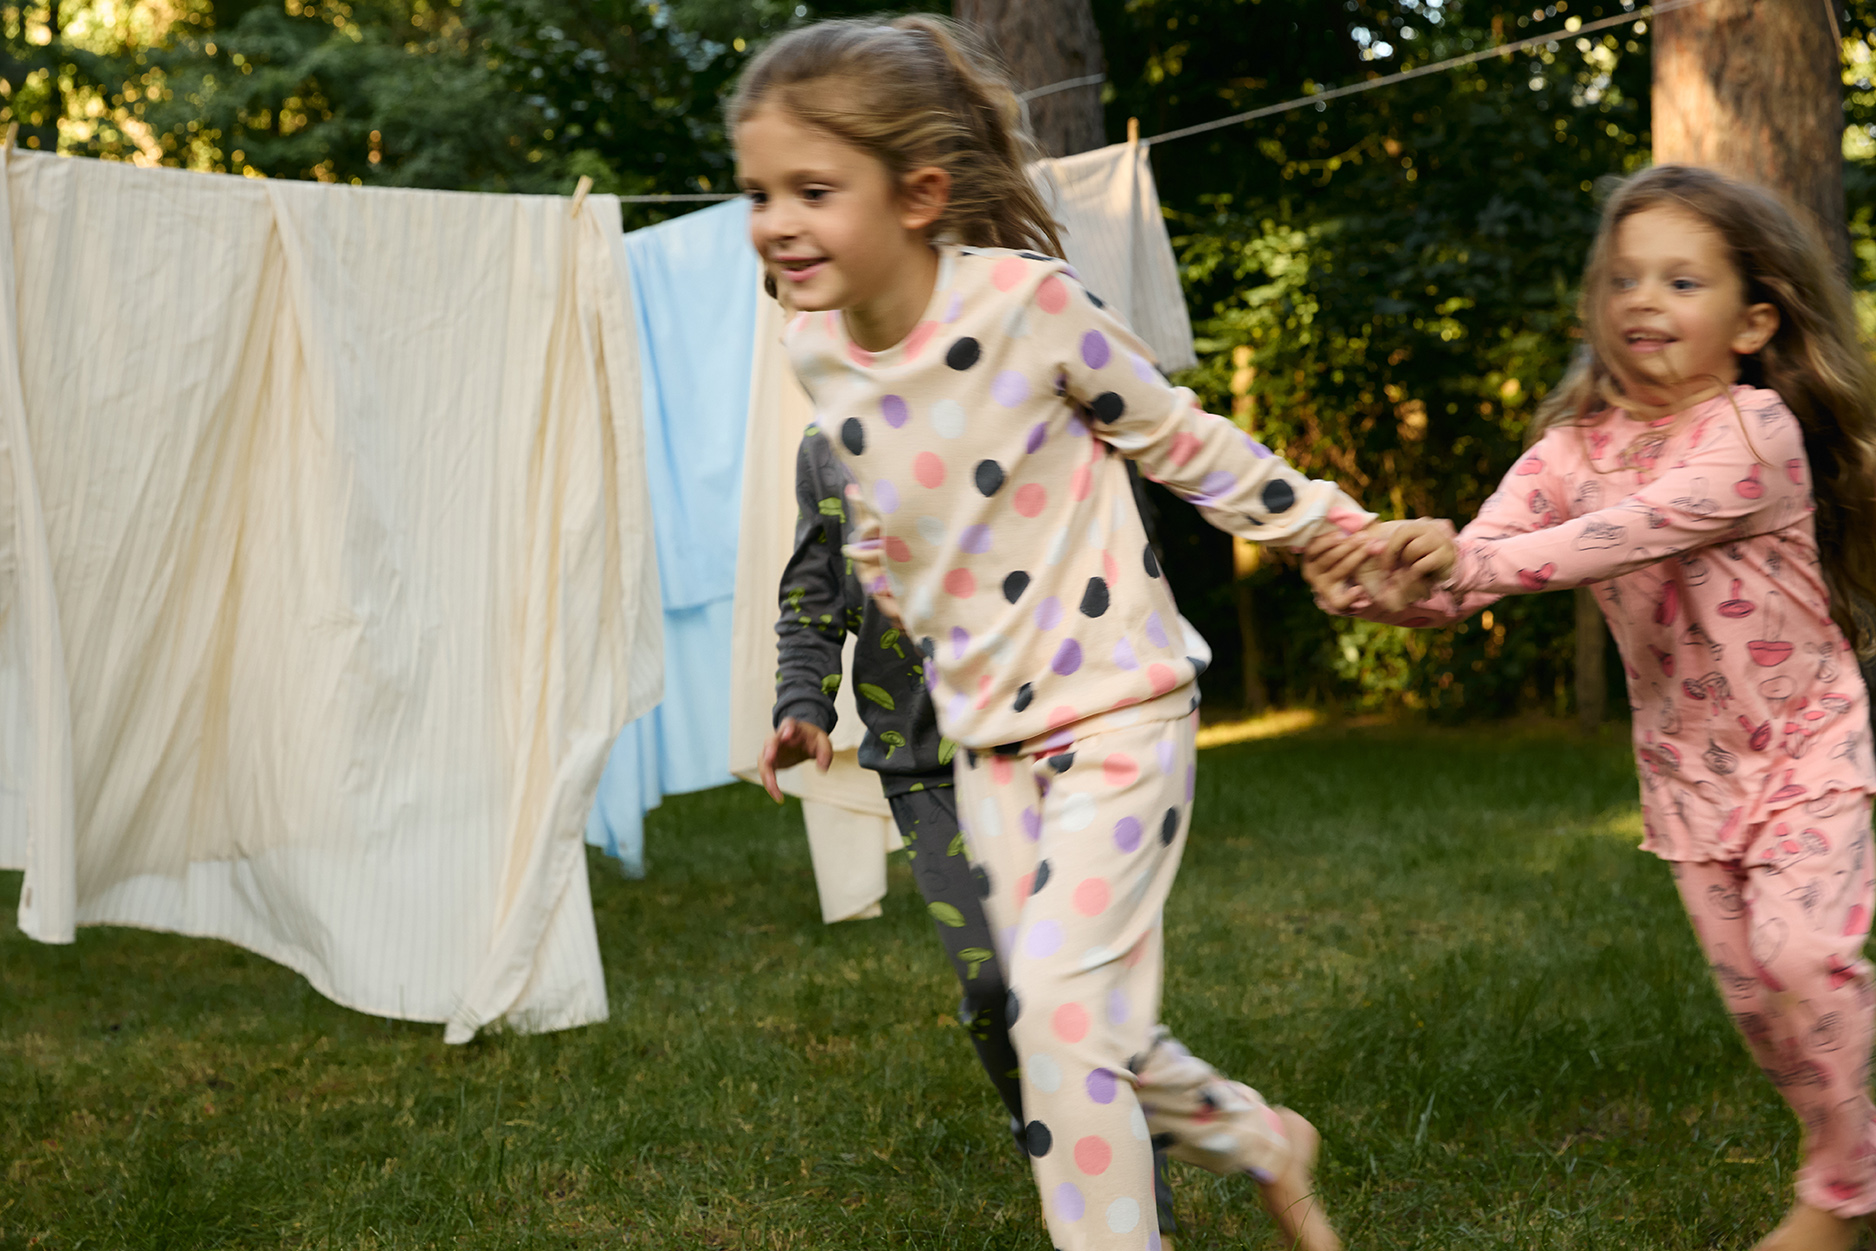 Dve djevojčice u roze pidžamama trče napolju 